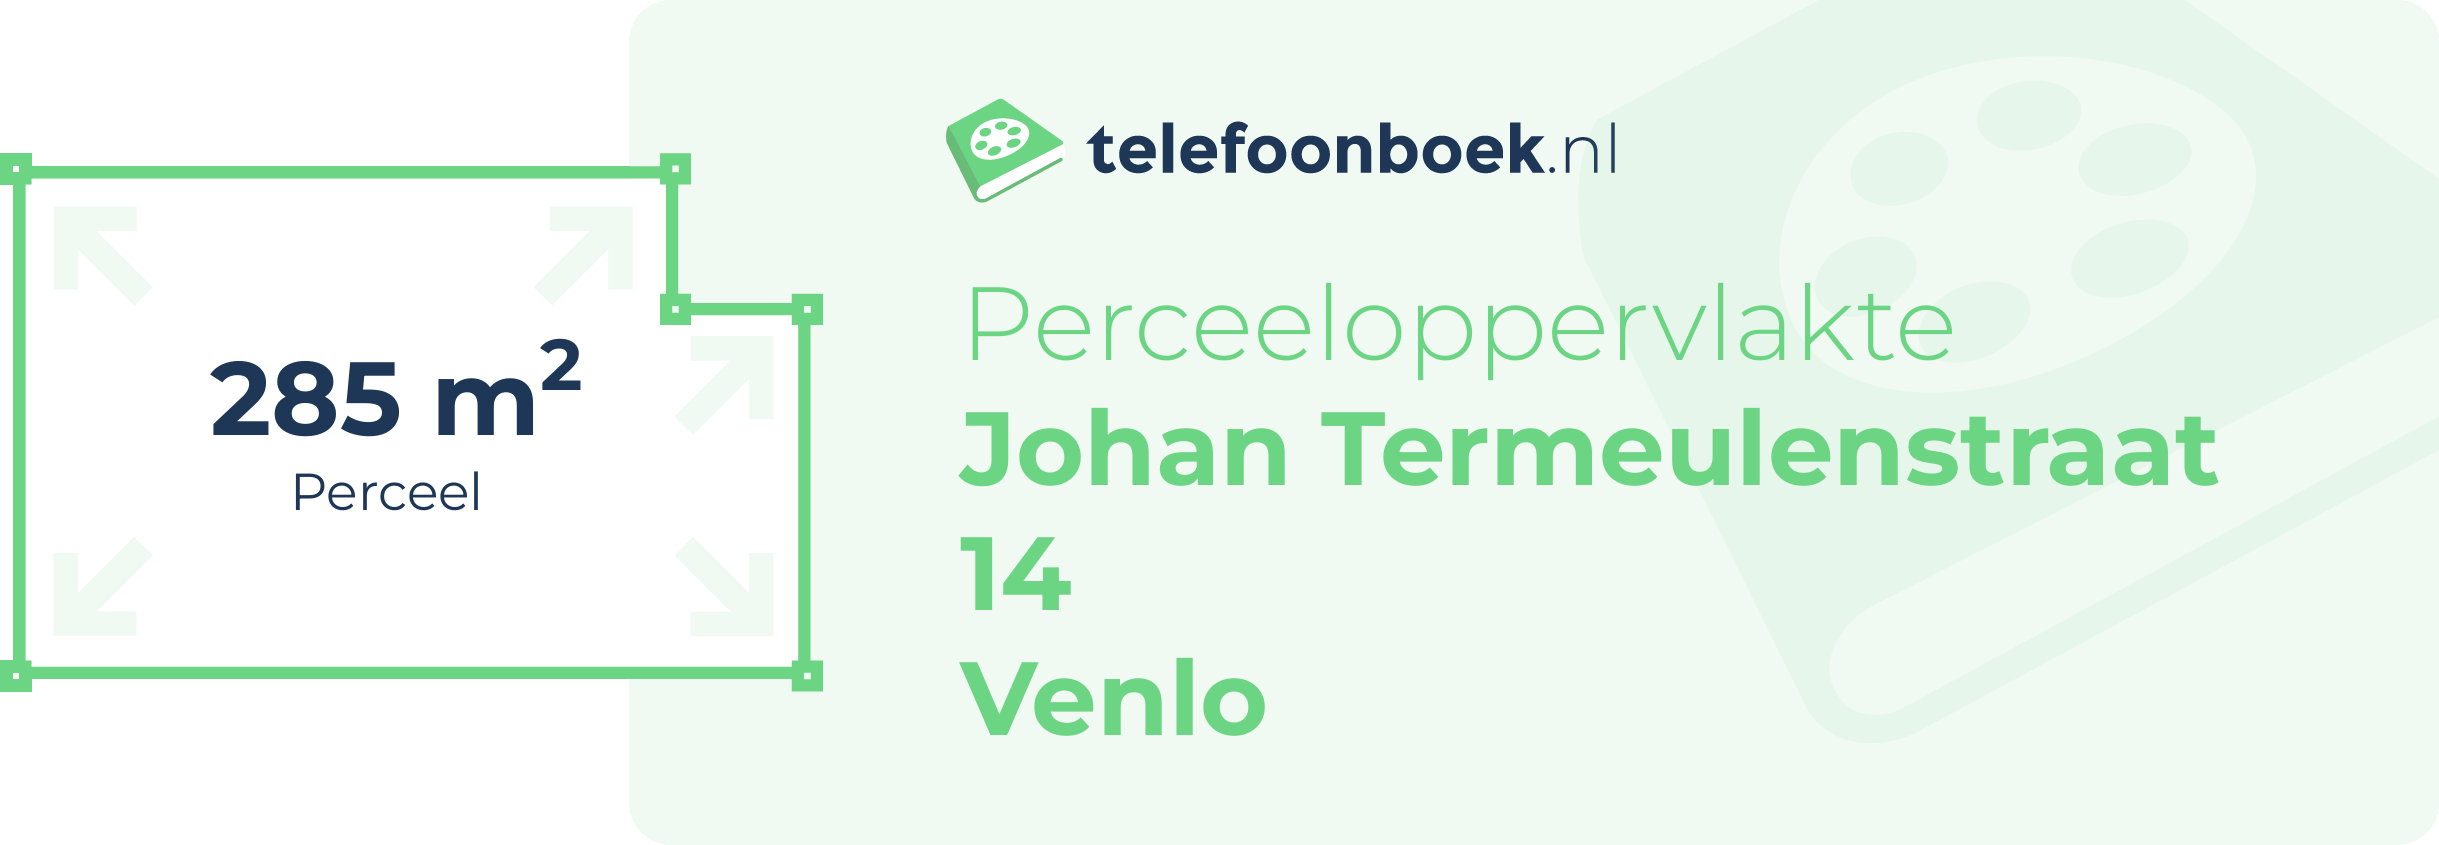 Perceeloppervlakte Johan Termeulenstraat 14 Venlo